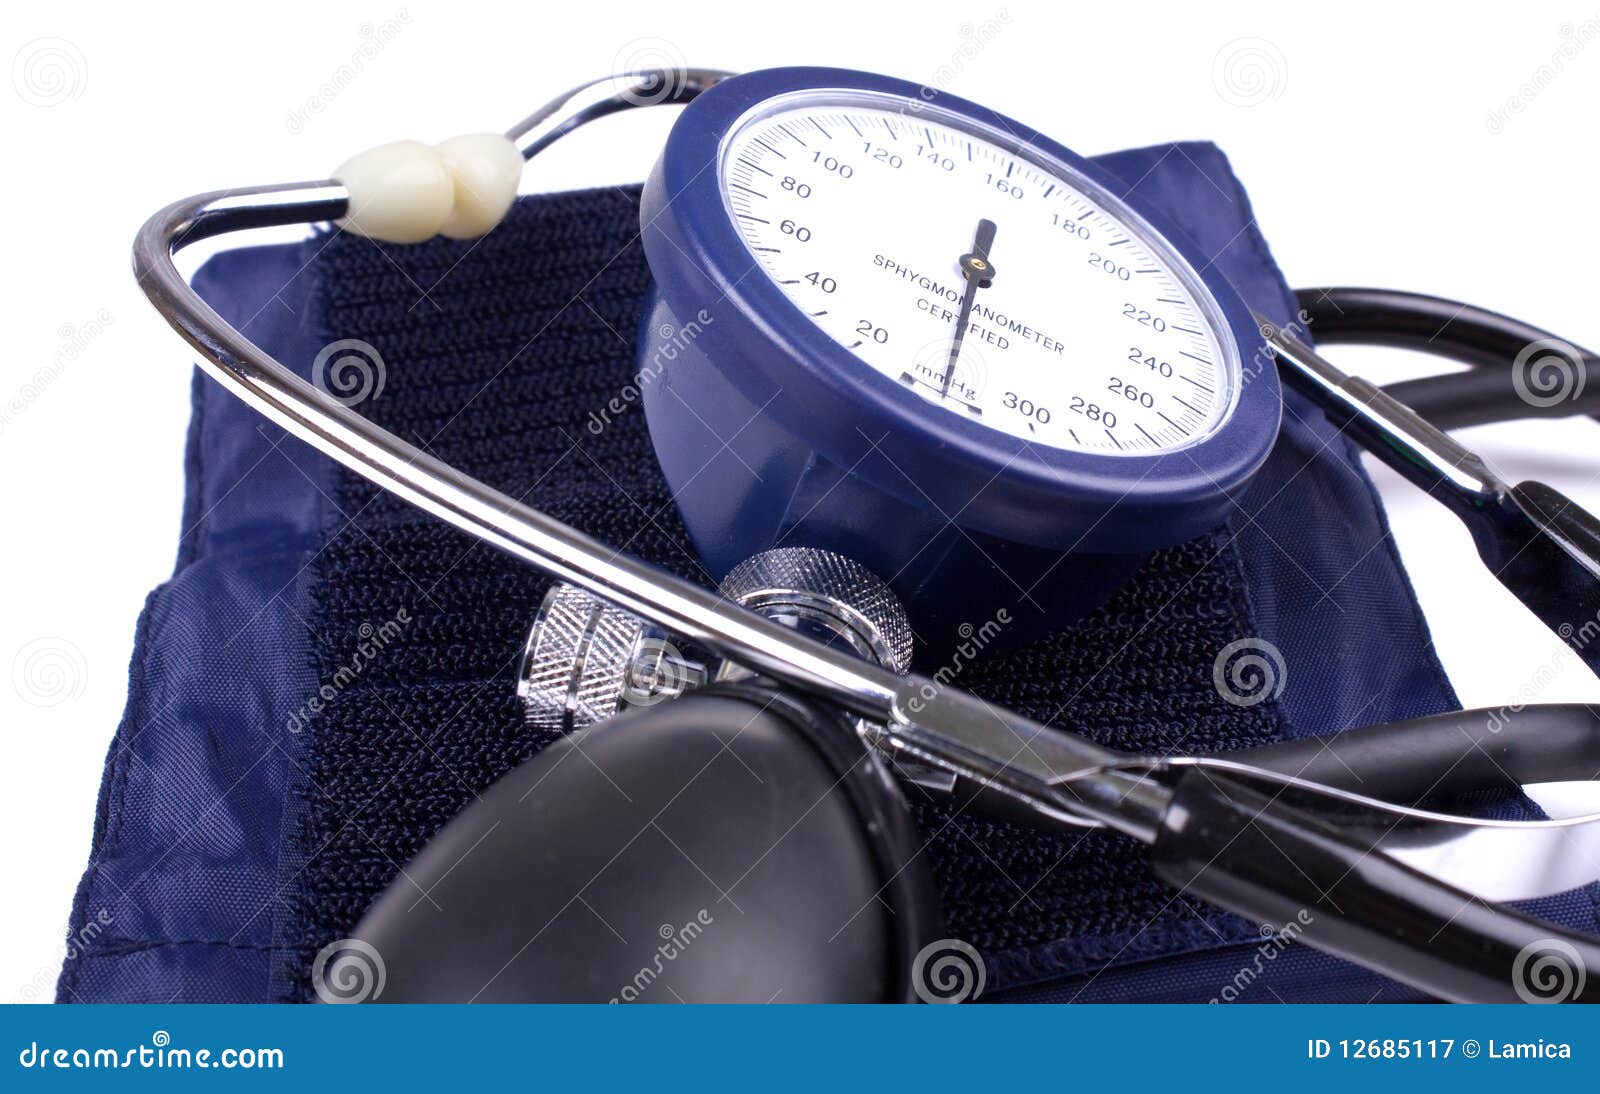 manual blood pressure medical tool